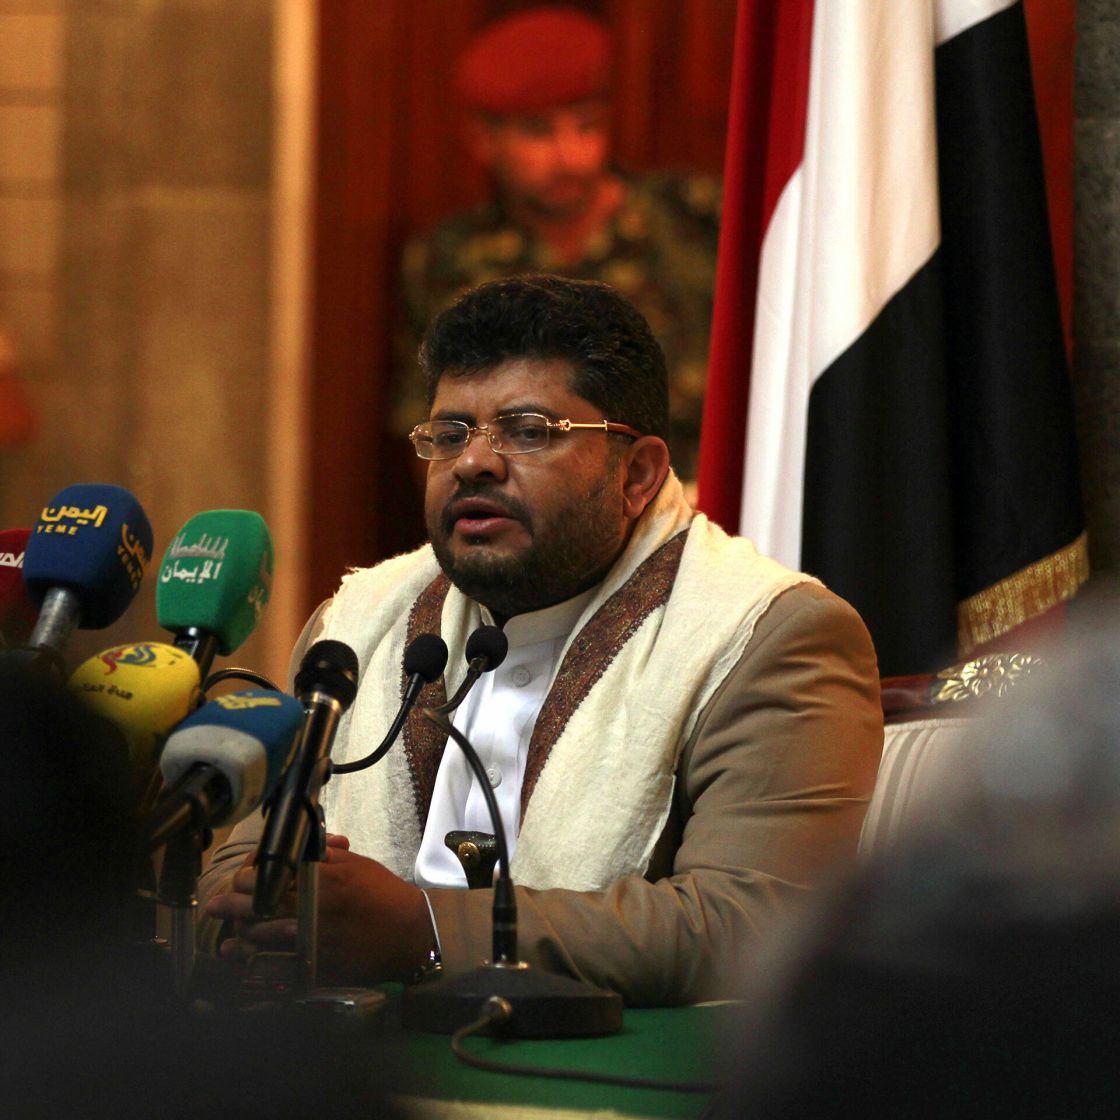 الحوثي يعلق على دعوة الحوار في السعودية: الرياض طرف في الحرب وليست وسيطاً